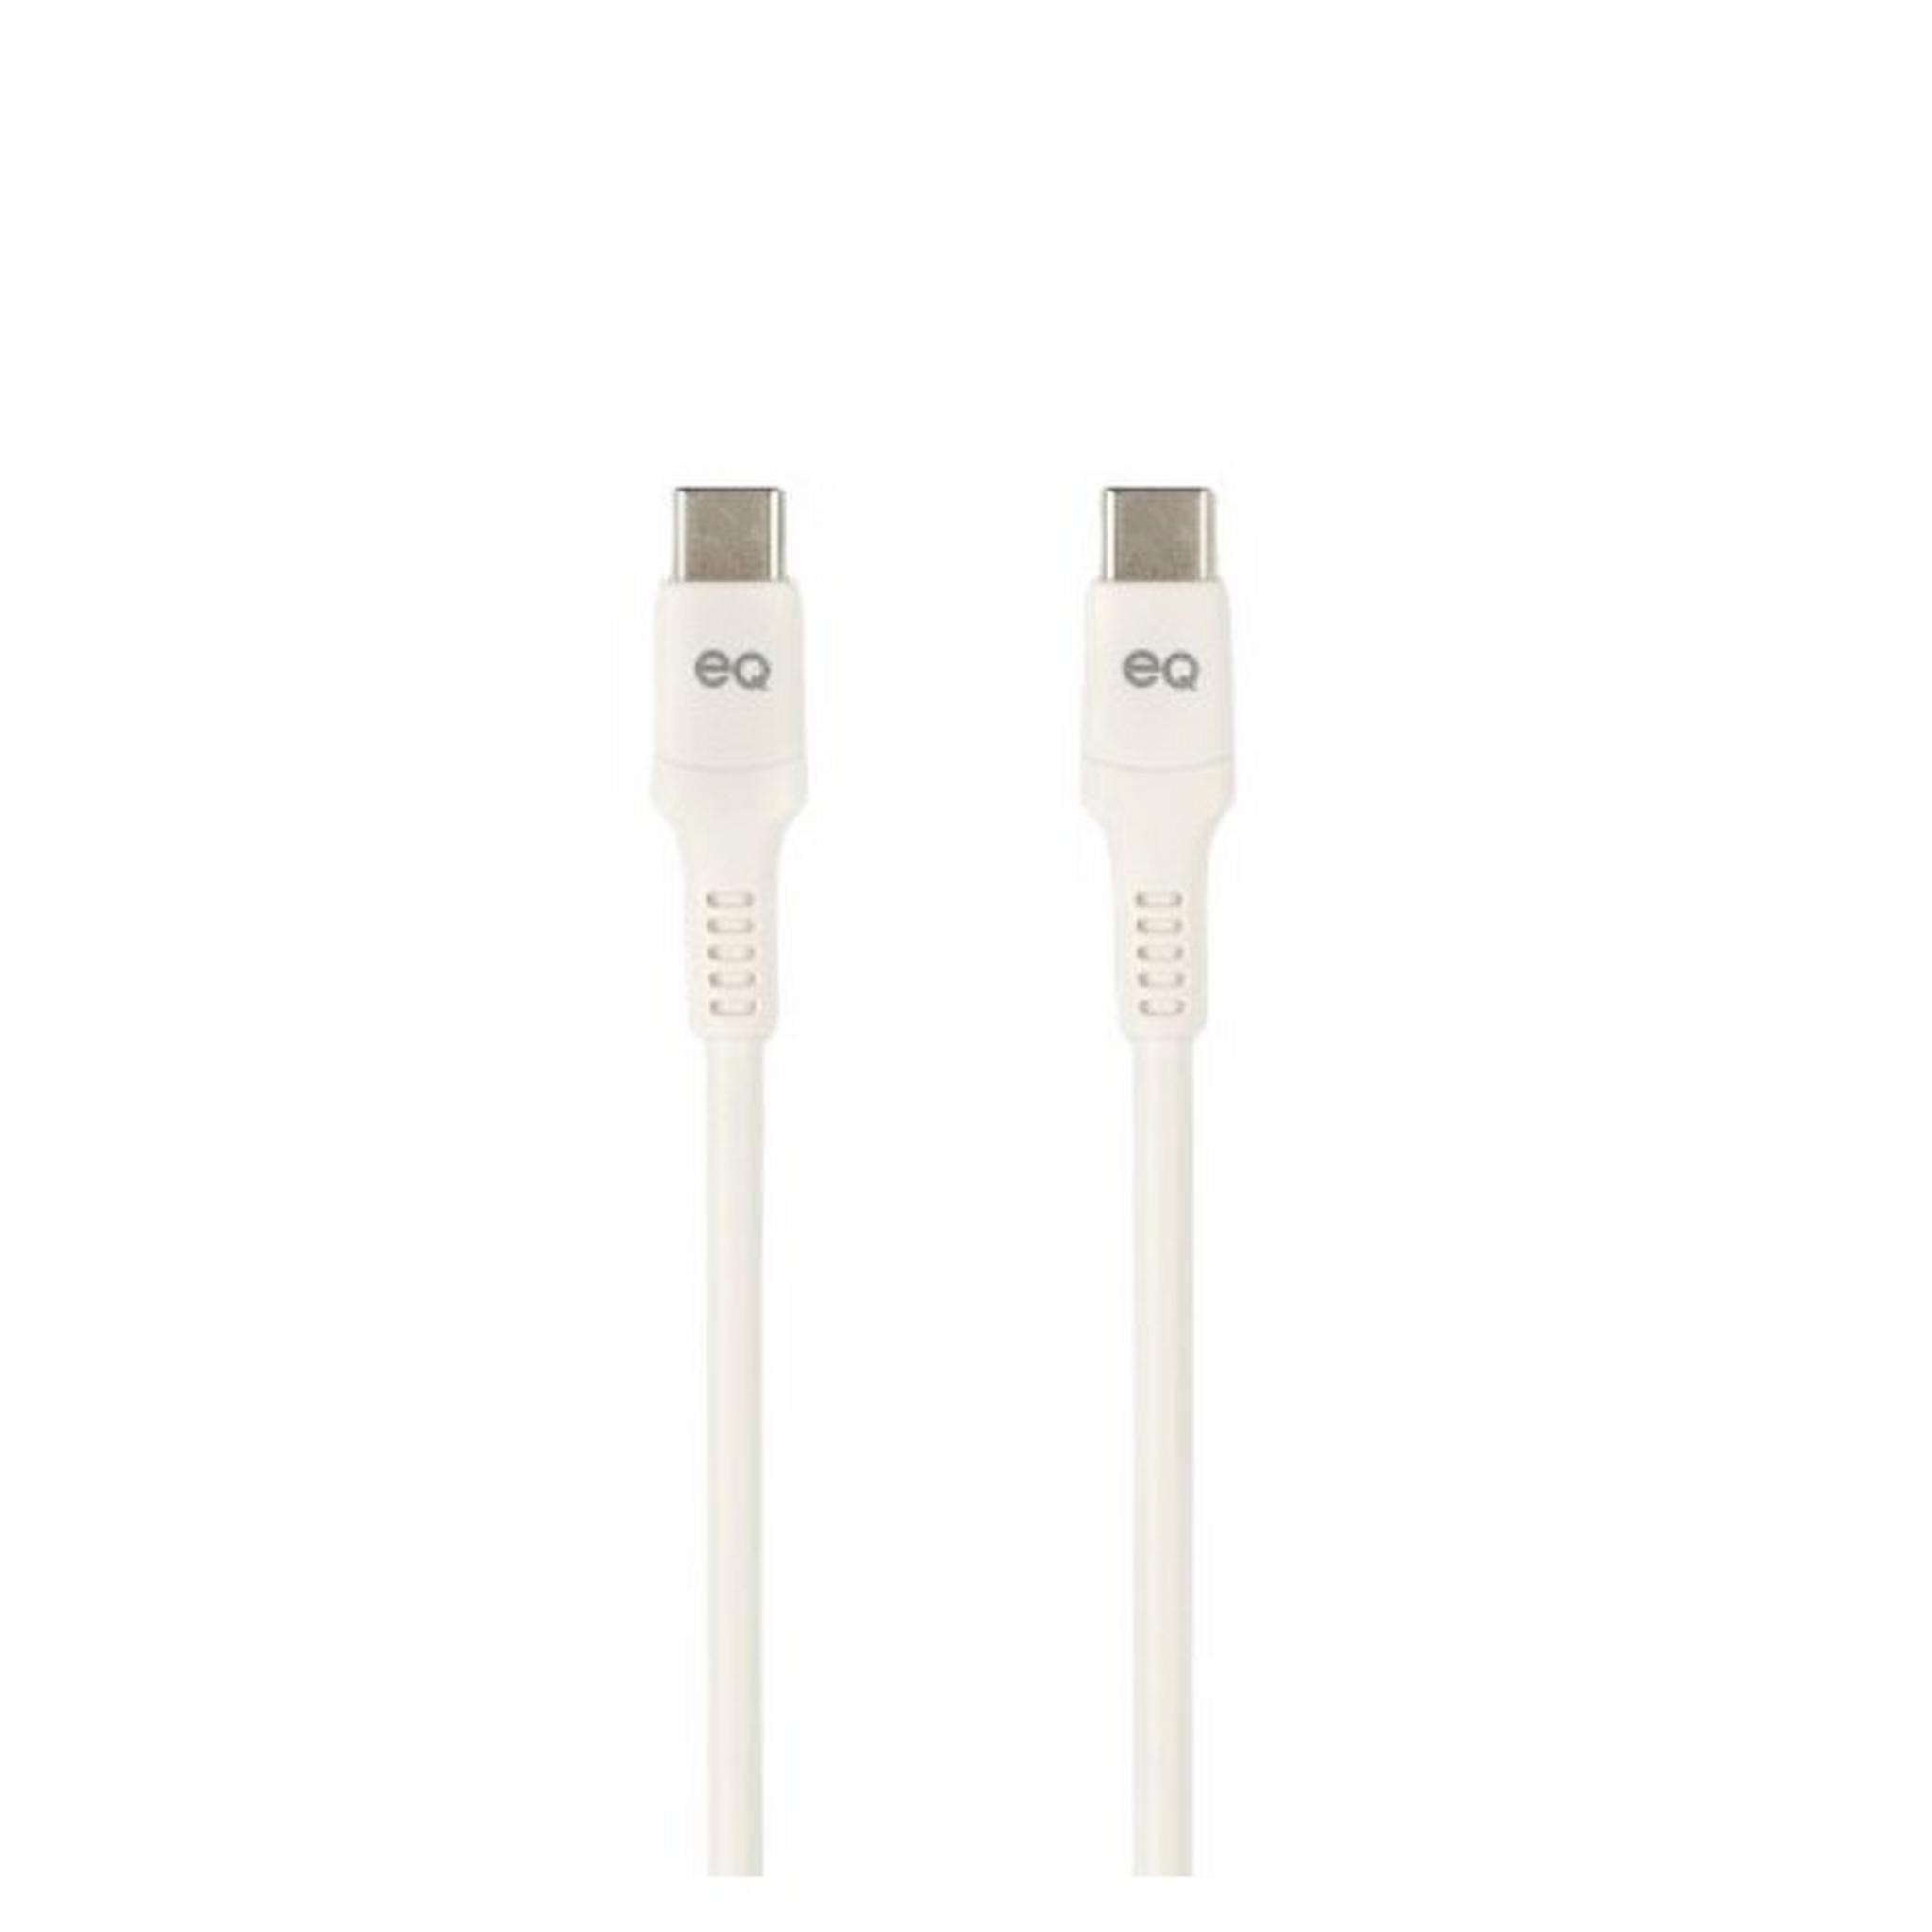 EQ USB-C To USB-C Charing Cable, 3m, CC-130D-3M-WHT – White